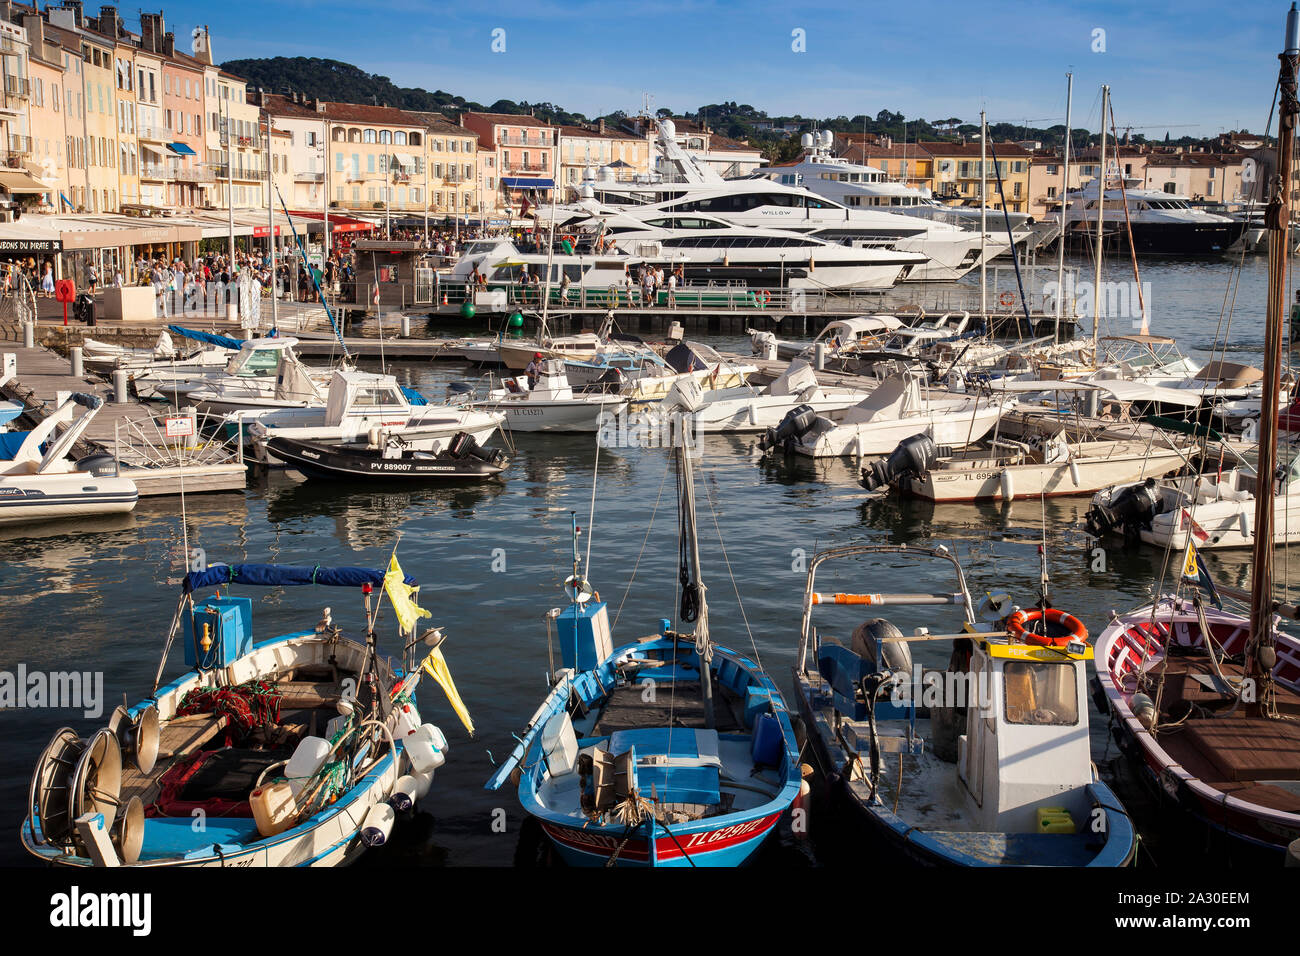 Boote im Hafen von Saint Tropez, Var, Provence-Alpes-Côte d'Azur, Frankreich, Europa| Boats in the harbor of Saint Tropez, Var, Provence-Alpes-Cote d' Stock Photo